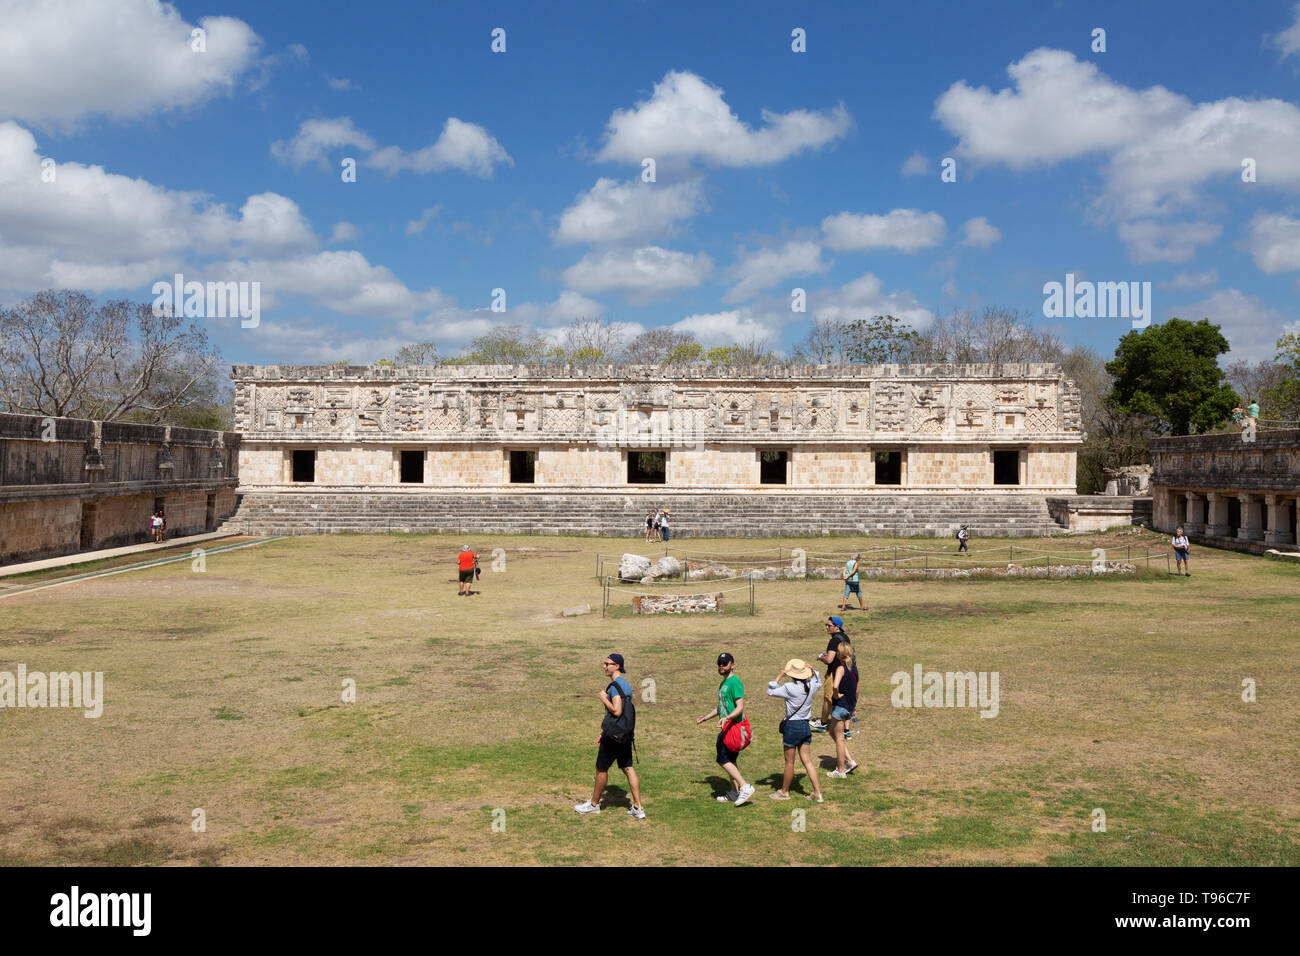 Convento un quadrangolo Uxmal rovine maya sito patrimonio mondiale dell'UNESCO, Uxmal Yucatan Messico America Latina Foto Stock